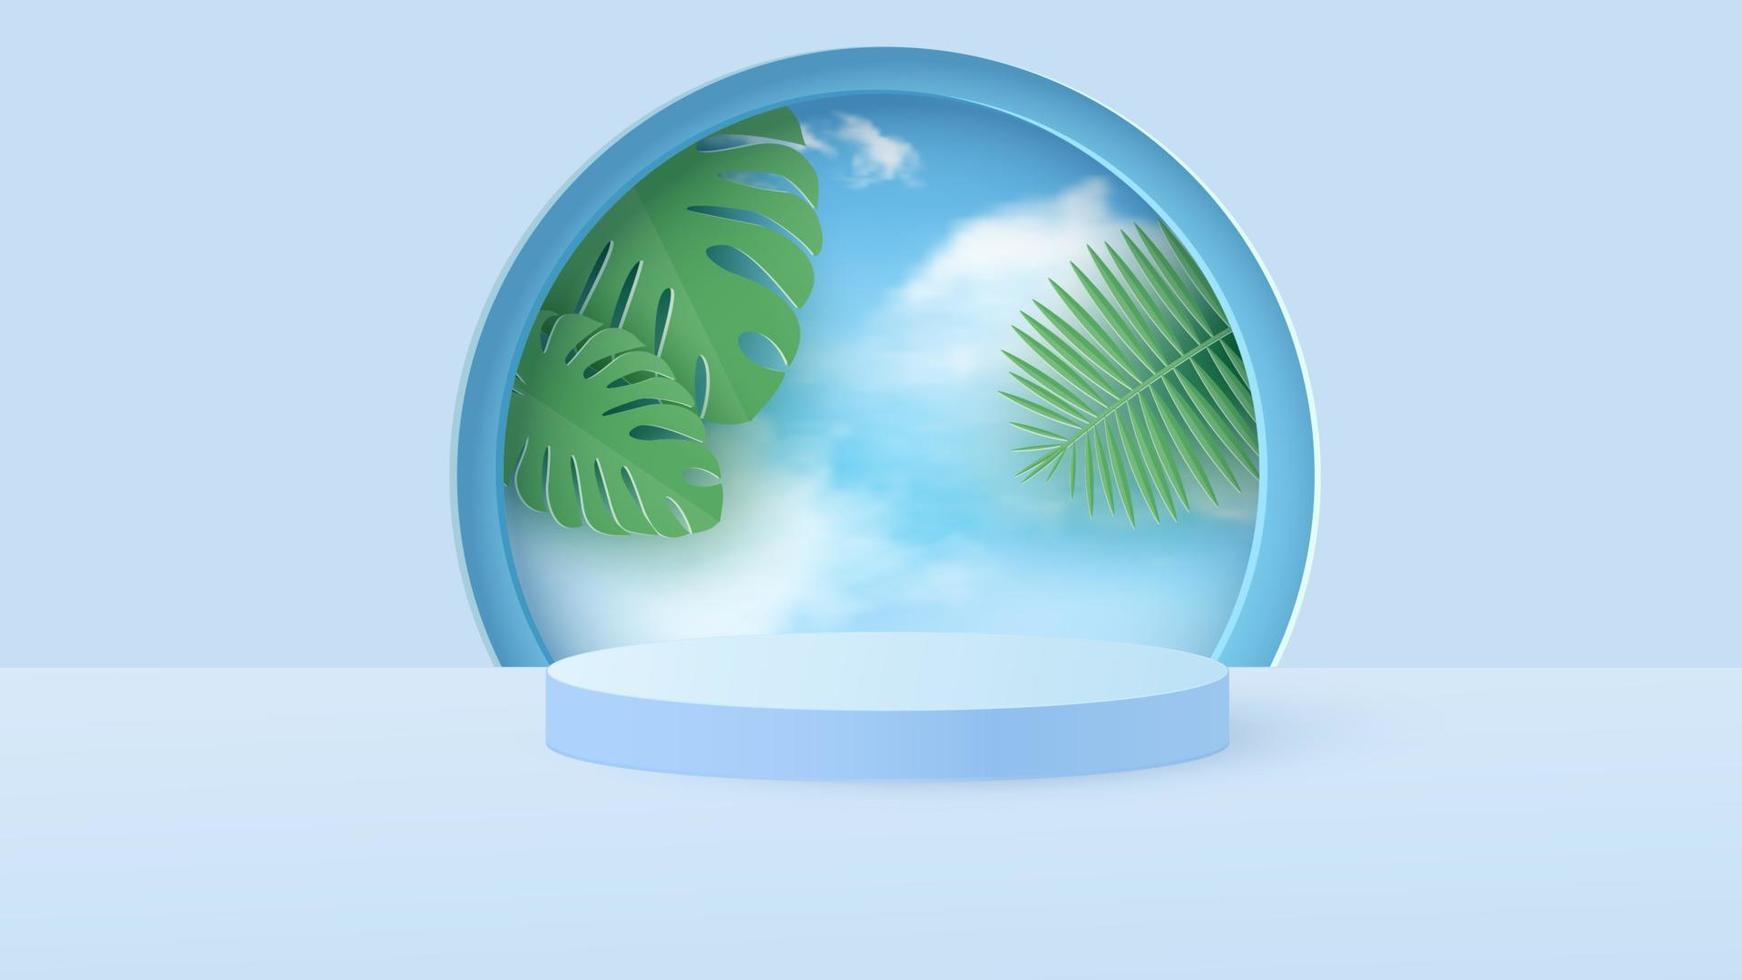 une scène minimale avec un podium cylindrique bleu clair avec des feuilles tropicales contre le ciel. scène pour la démonstration d'un produit cosmétique, vitrine. illustration vectorielle vecteur